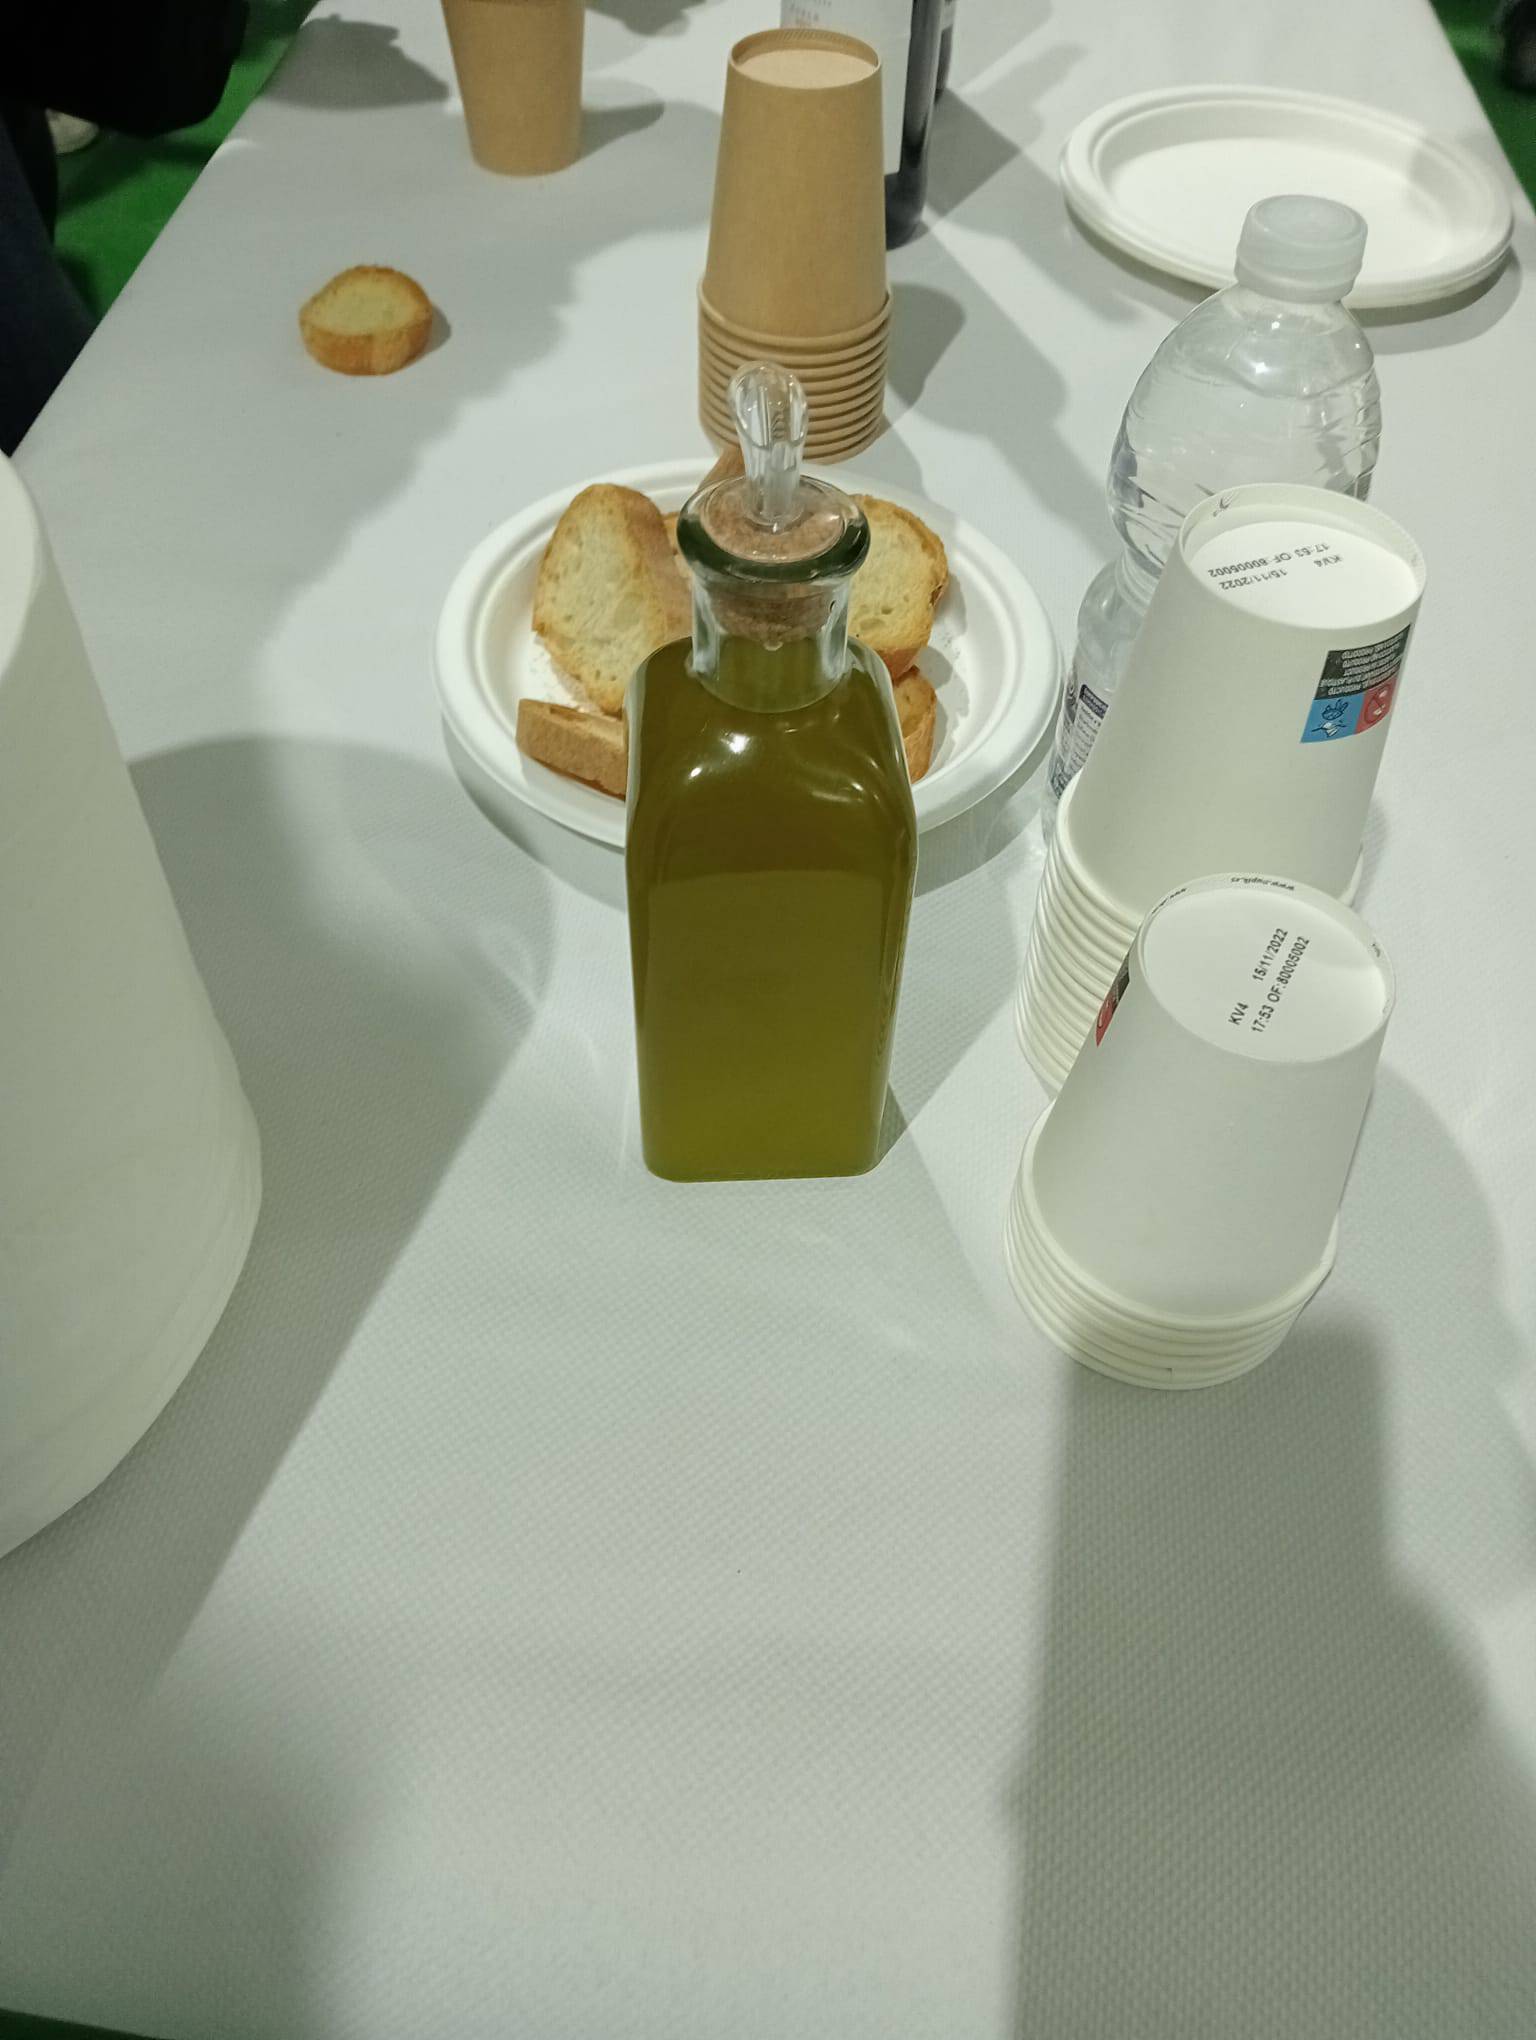 VIDEO Boca maslinovog ulja u Španjolskoj 9,25 eura, prije tri godine bila skoro triput jeftinija